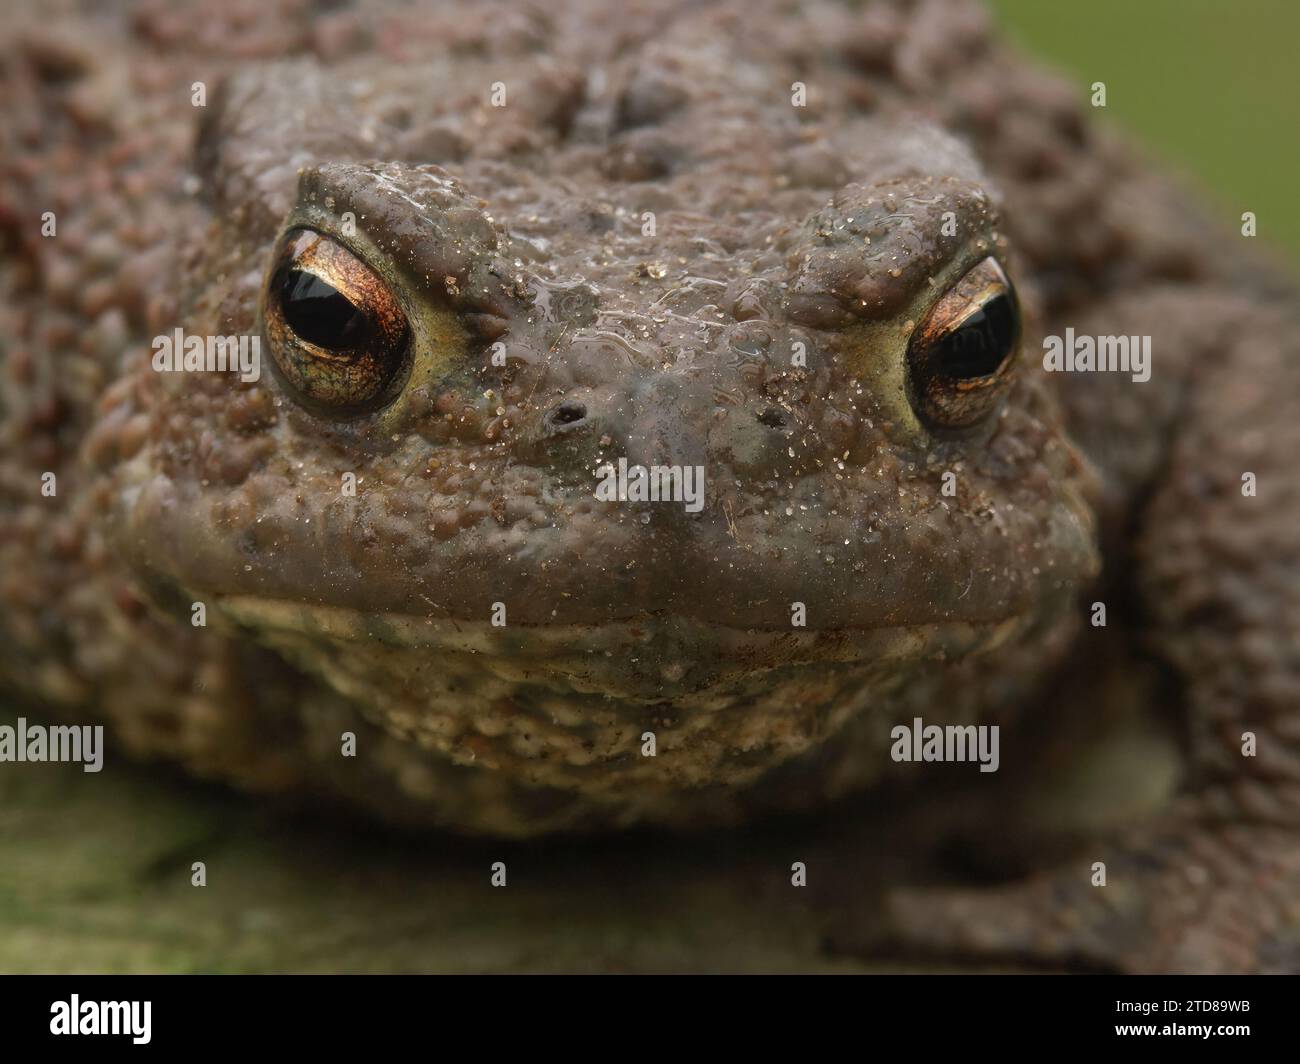 Facial closeup on a female Common European toad, Bufo bufo from the garden Stock Photo